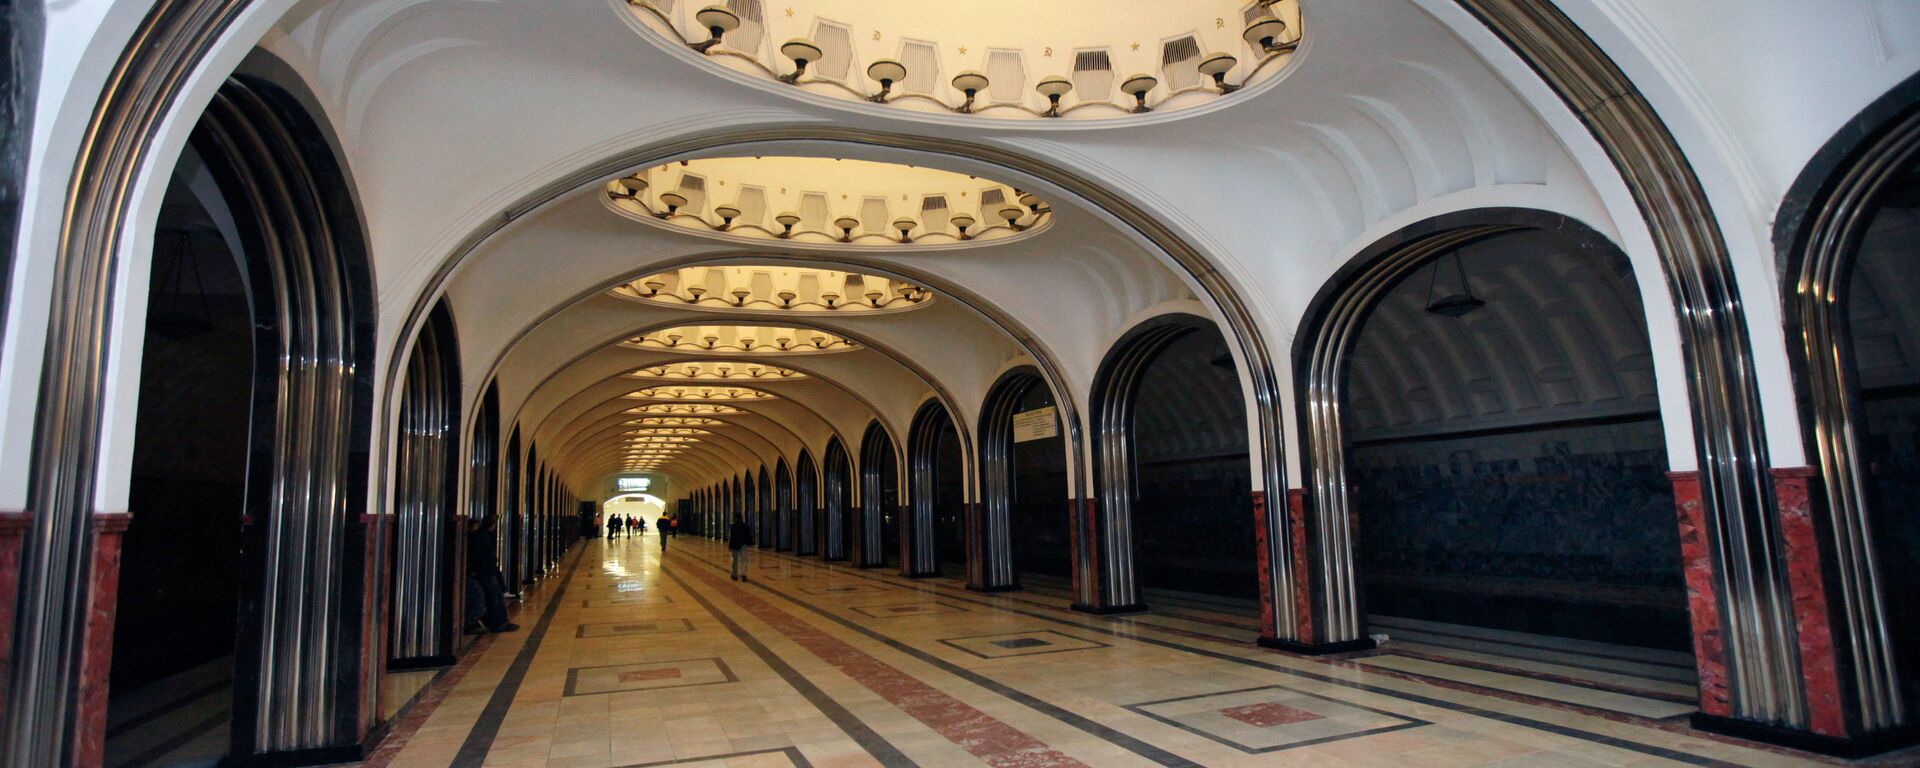 La estación de metro Mayakovskaya en Moscú - Sputnik Mundo, 1920, 17.12.2020